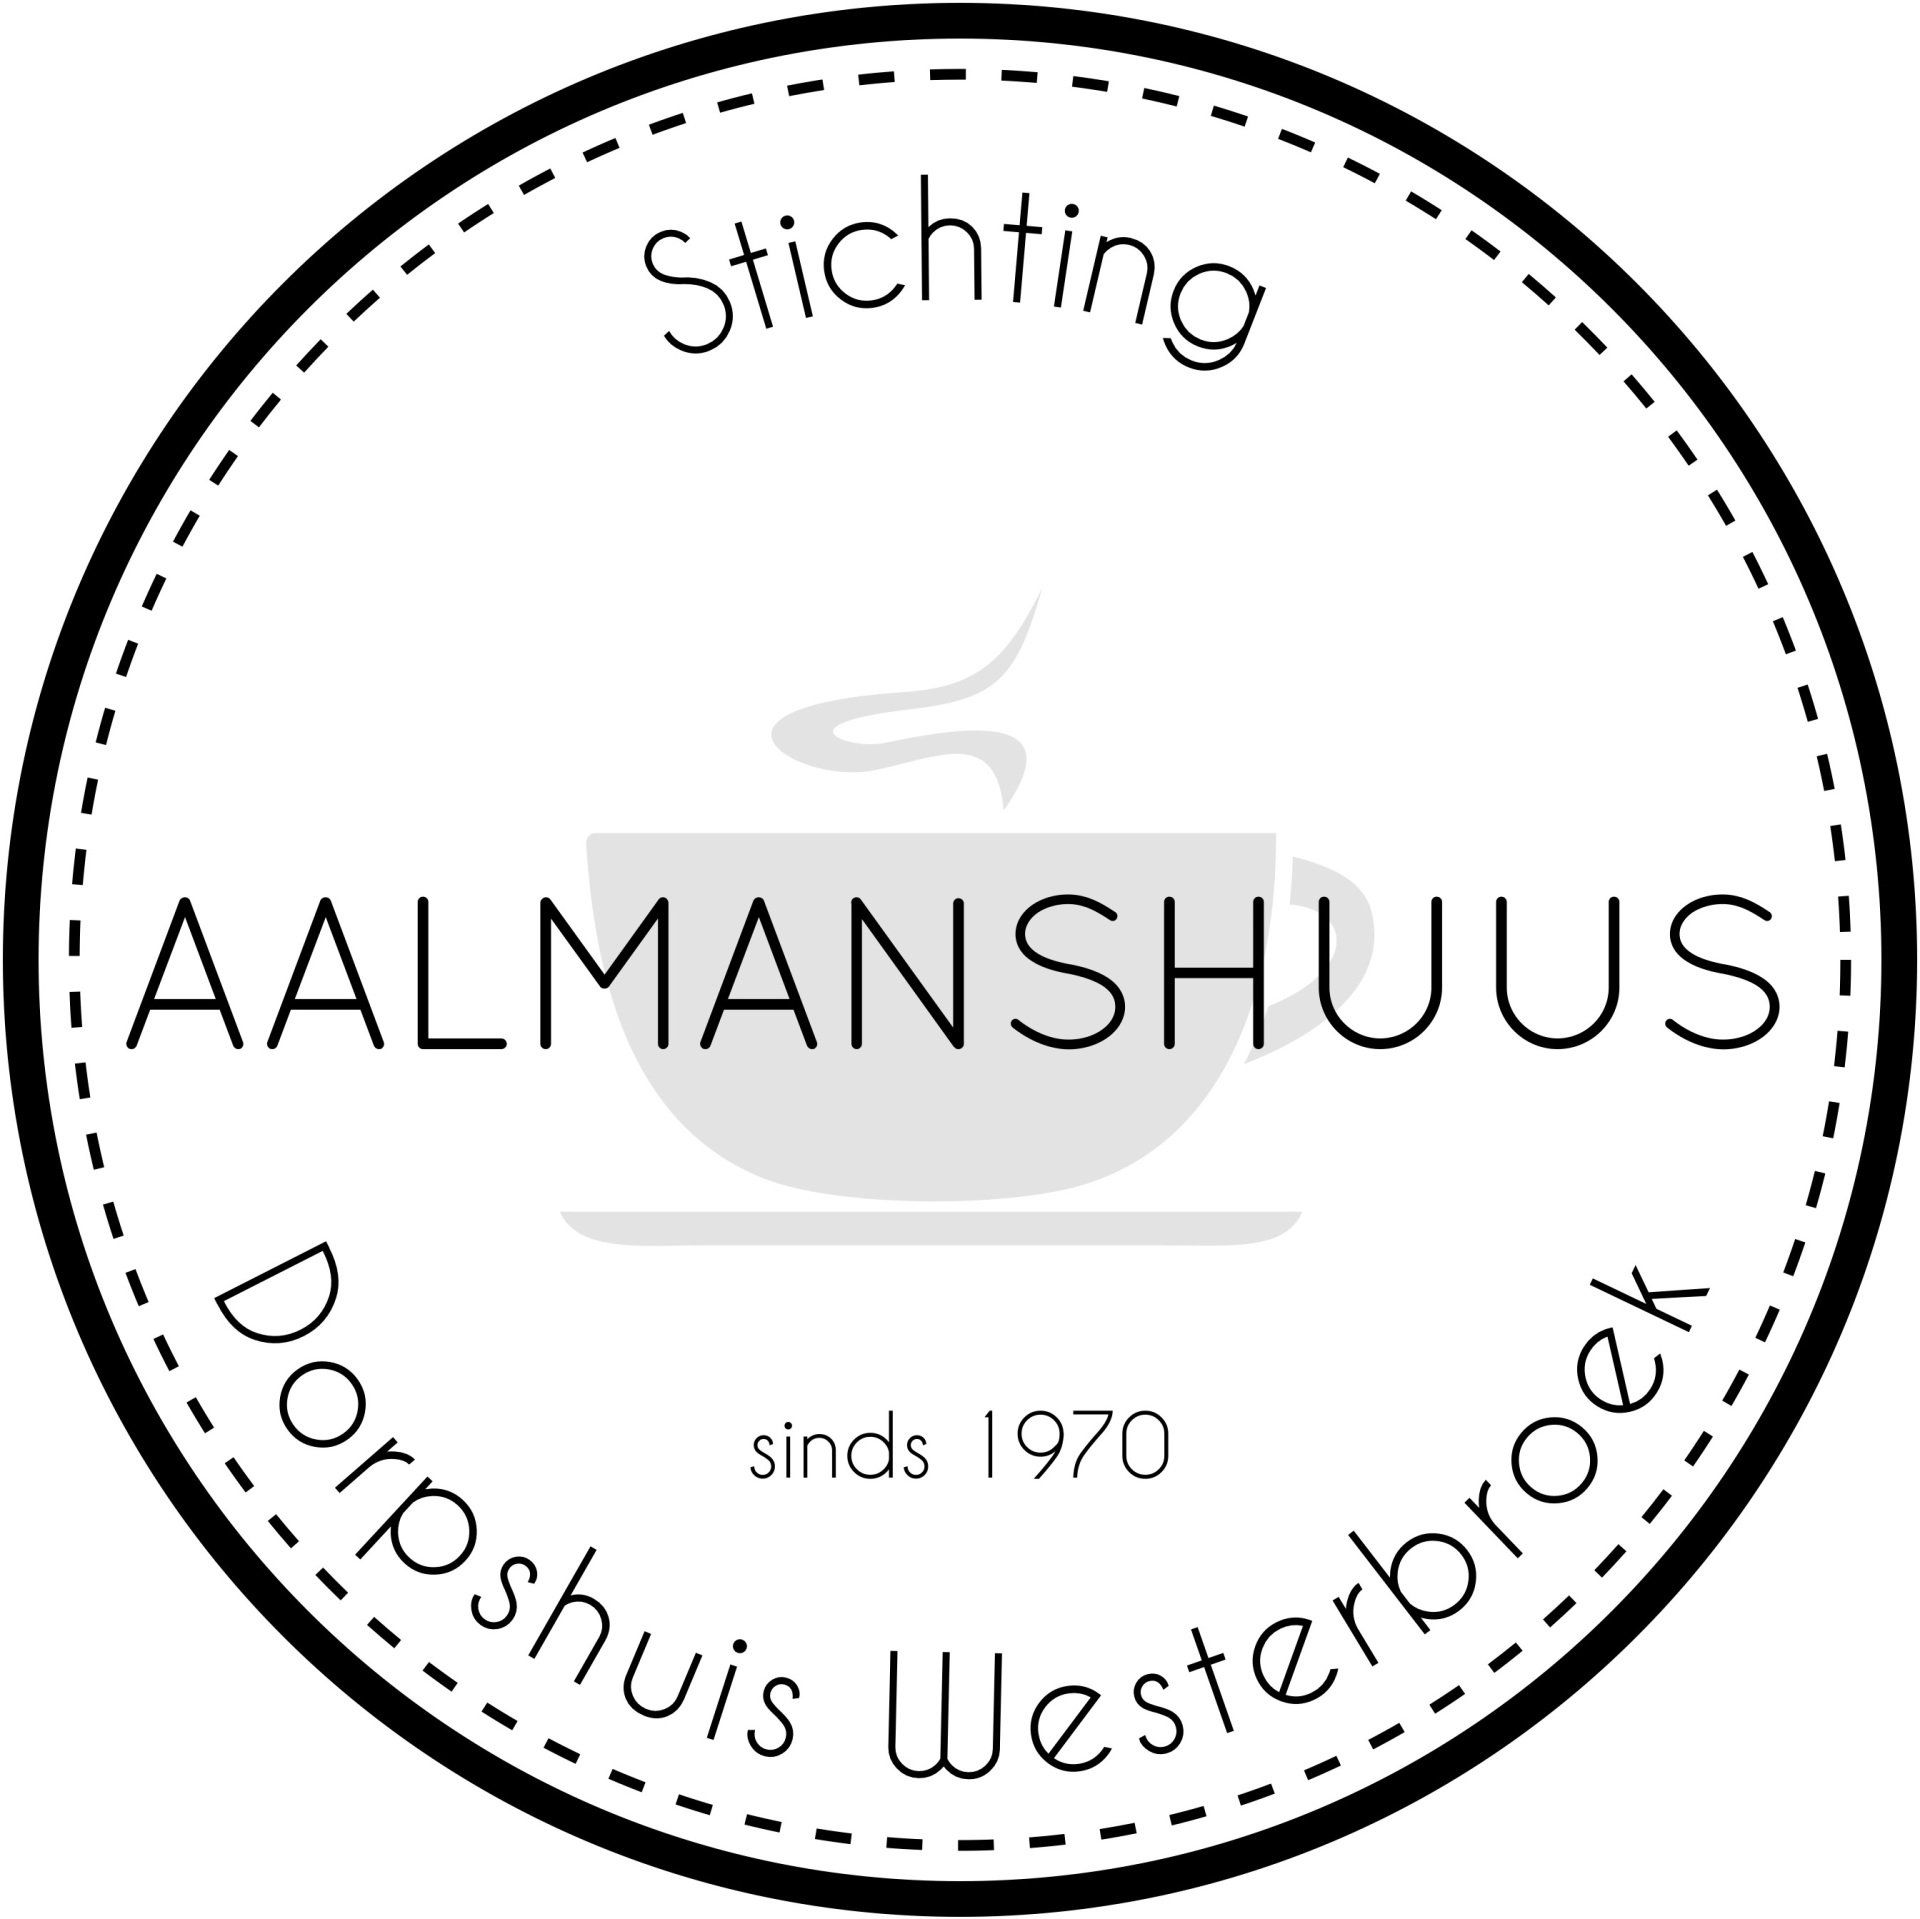 (c) Aalmanshuus.nl